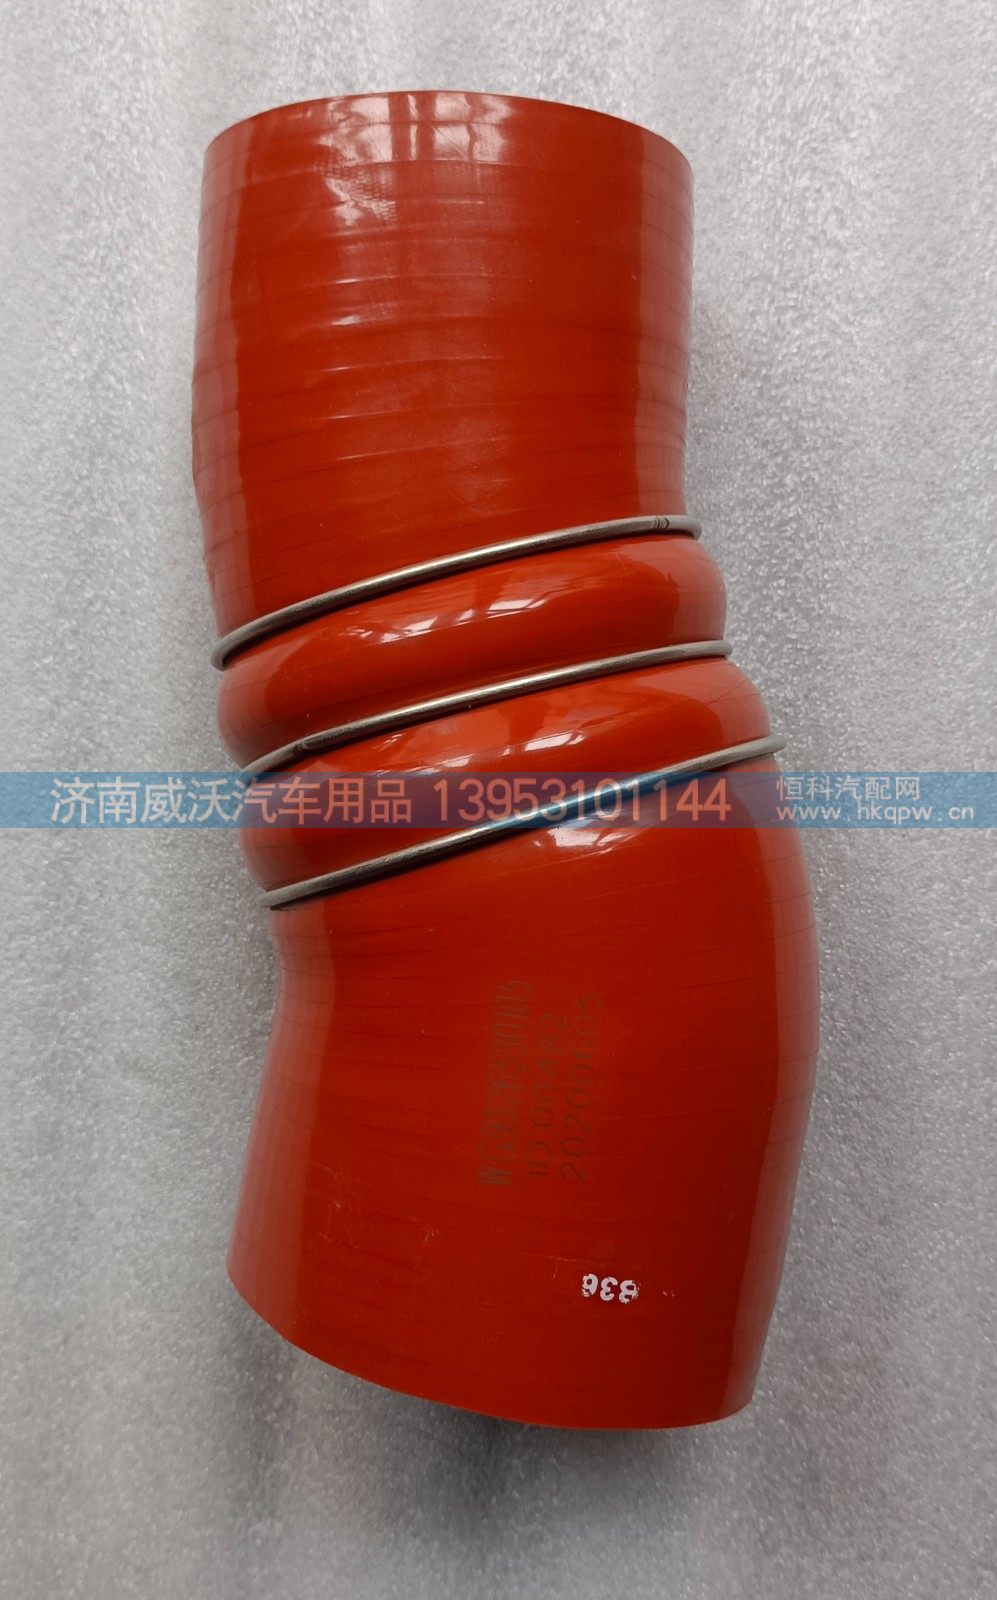 WG9326530105,中冷器进气胶管,济南市威沃汽车用品有限公司